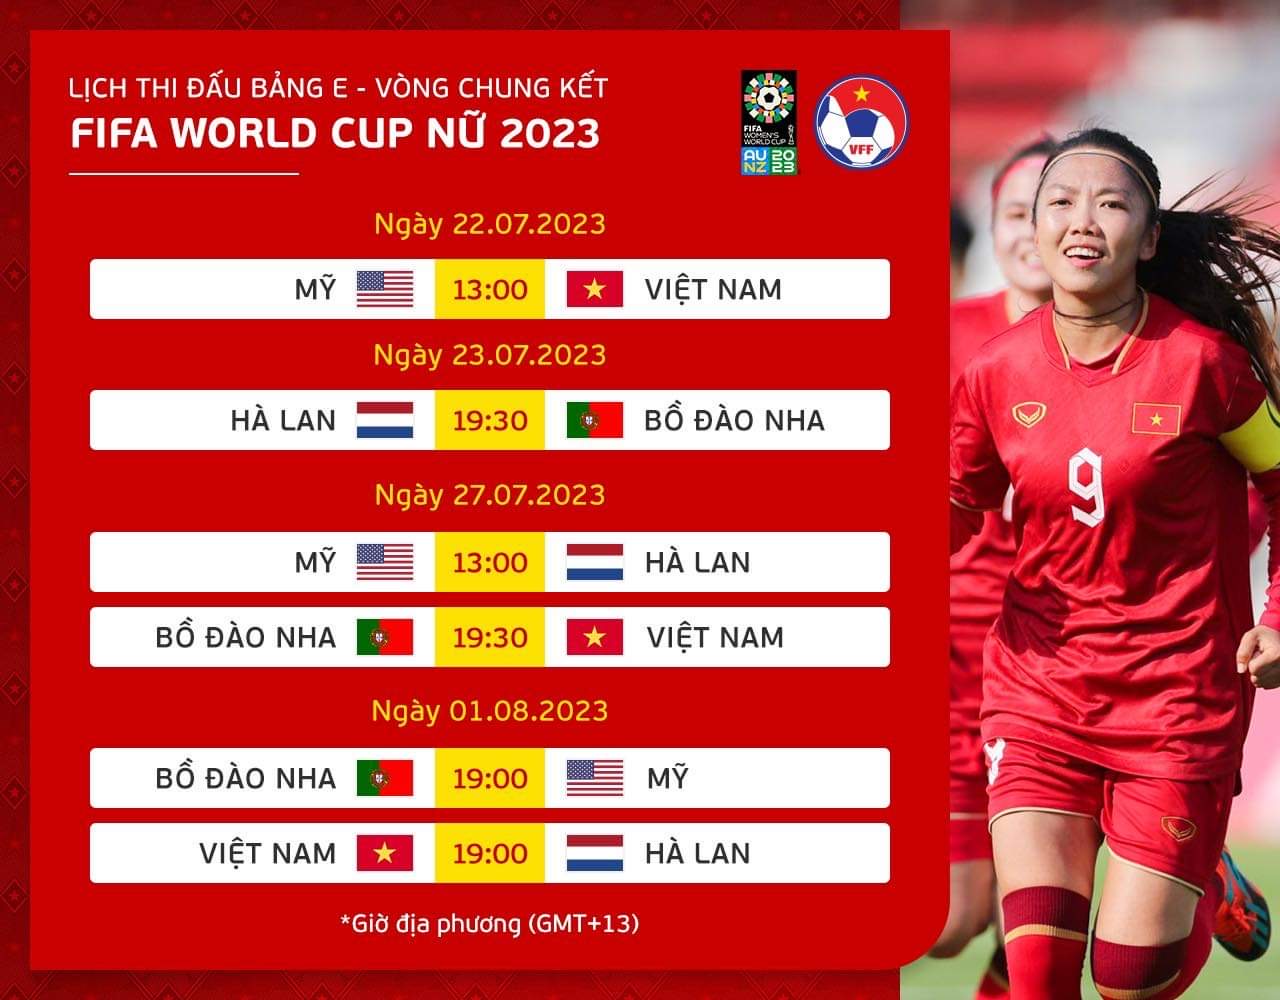 Fred Taylor Park, sân tập của đội tuyển nữ Việt Nam tại World Cup đẹp mỹ mãn - Ảnh 5.